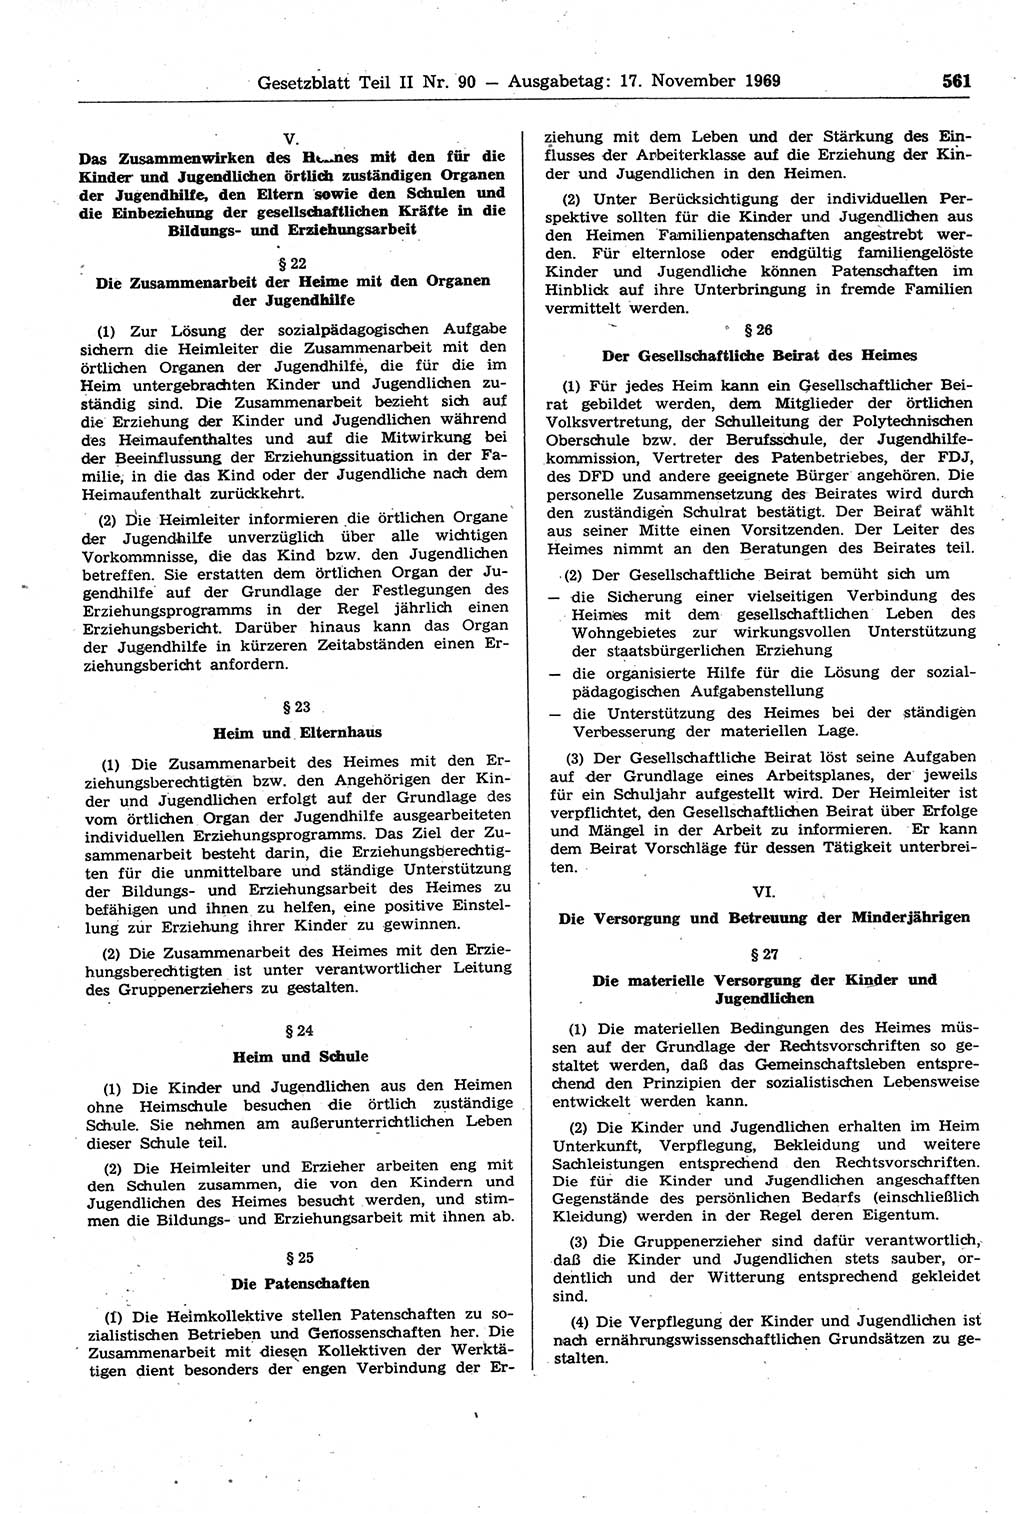 Gesetzblatt (GBl.) der Deutschen Demokratischen Republik (DDR) Teil ⅠⅠ 1969, Seite 561 (GBl. DDR ⅠⅠ 1969, S. 561)